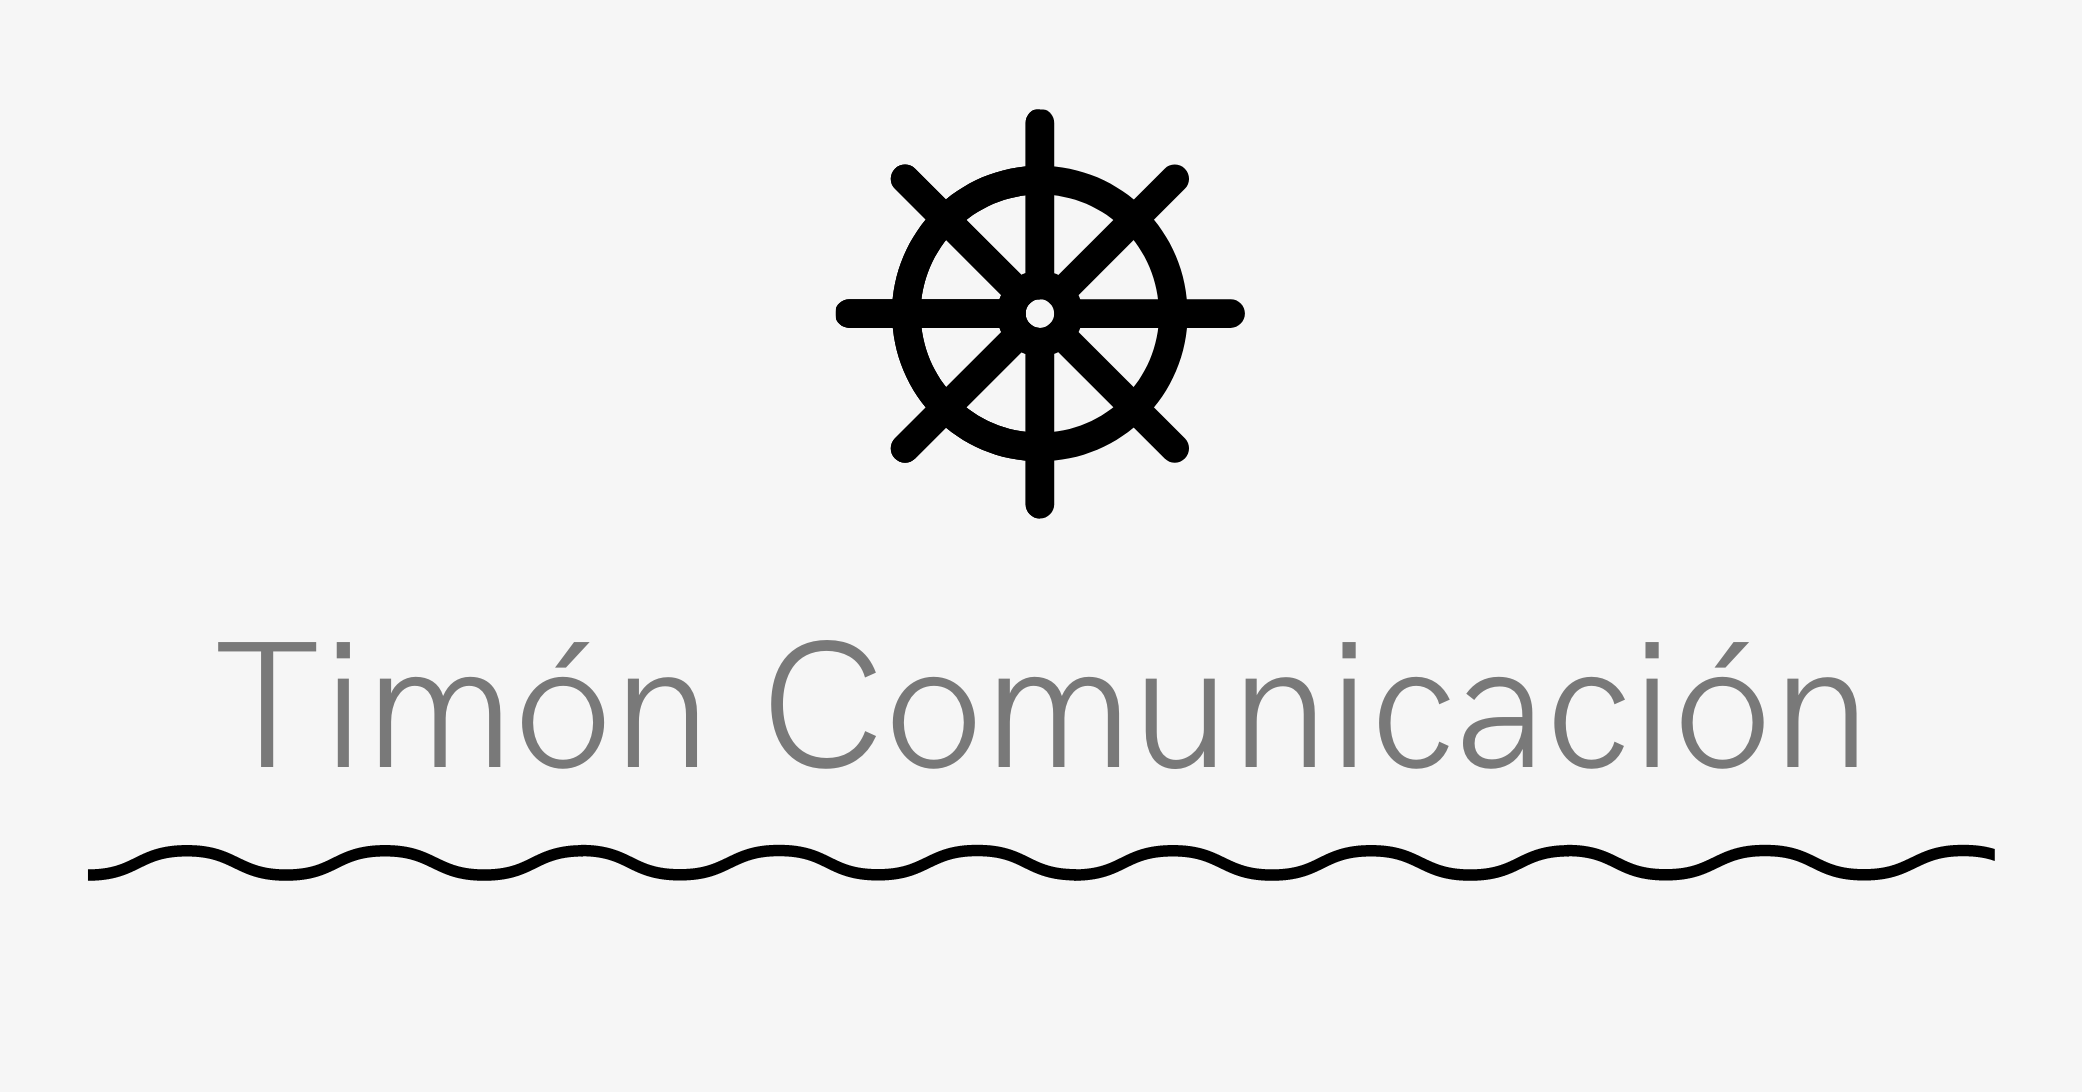 Timón Comunicación | Creación y gestión de contenidos para empresas logísticas, marítimas y portuarias | 2023 ©